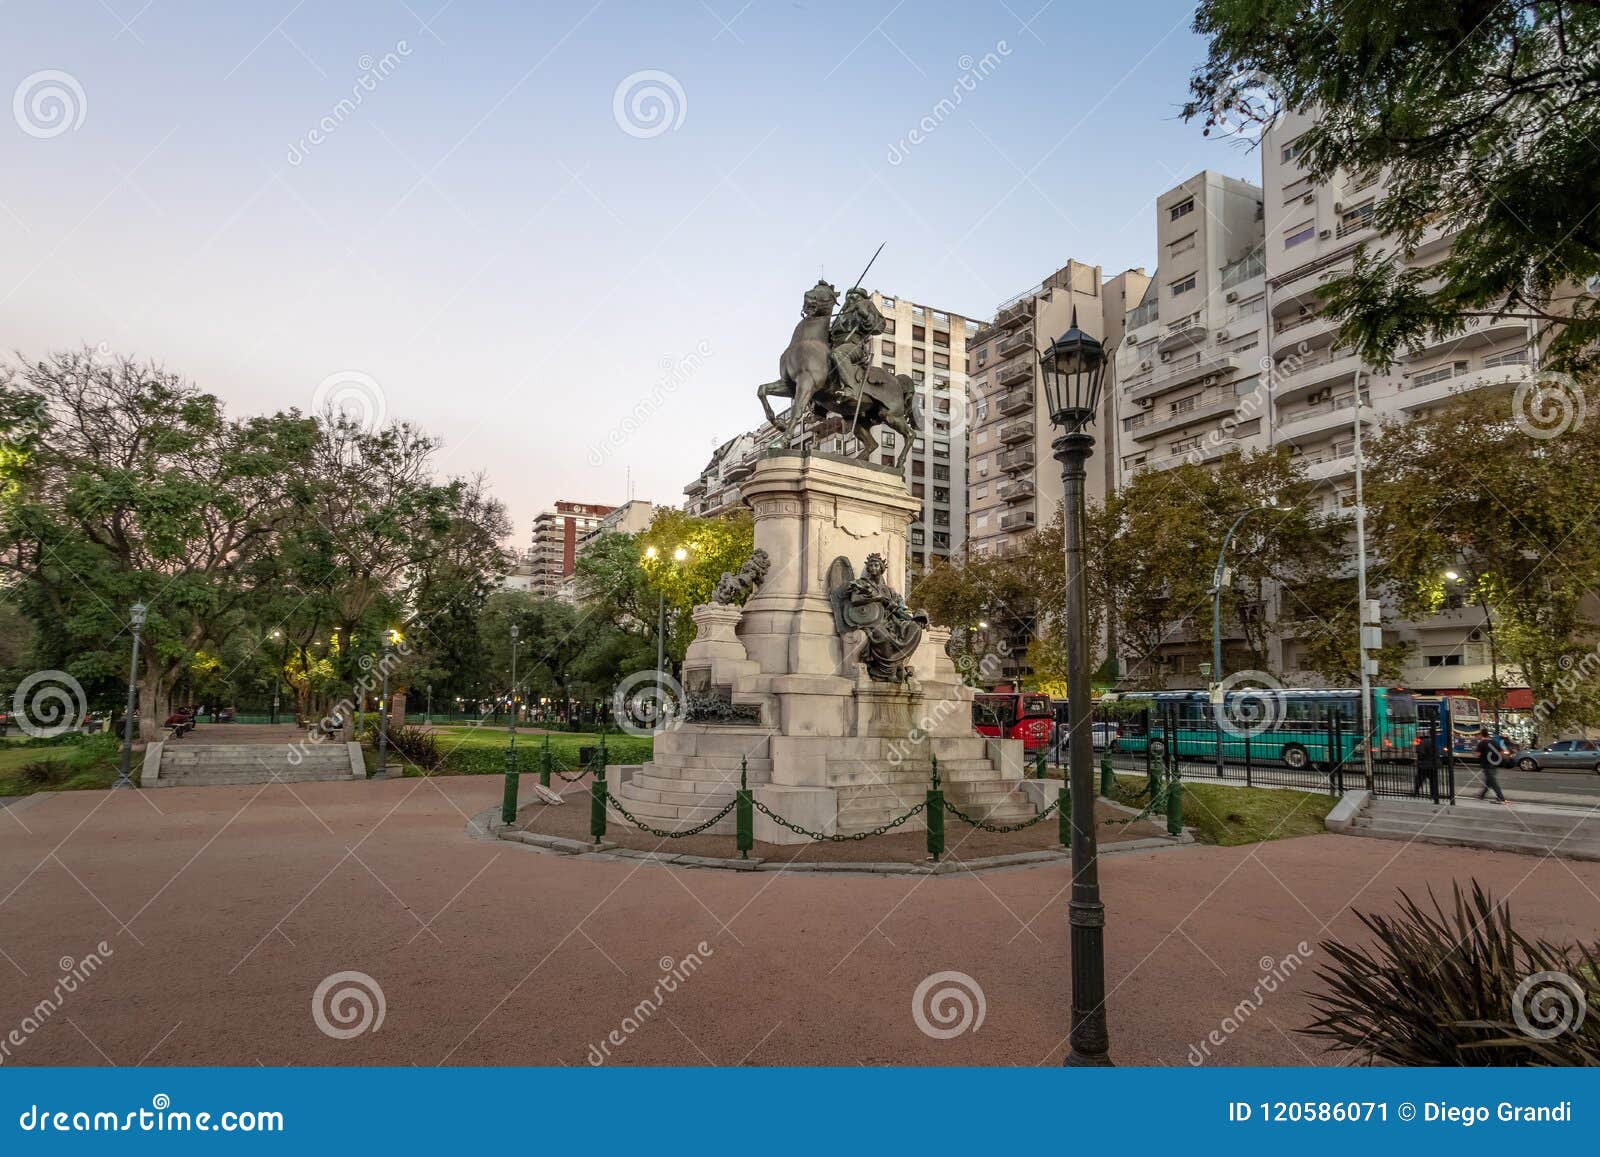 plaza italia in palermo - buenos aires, argentina